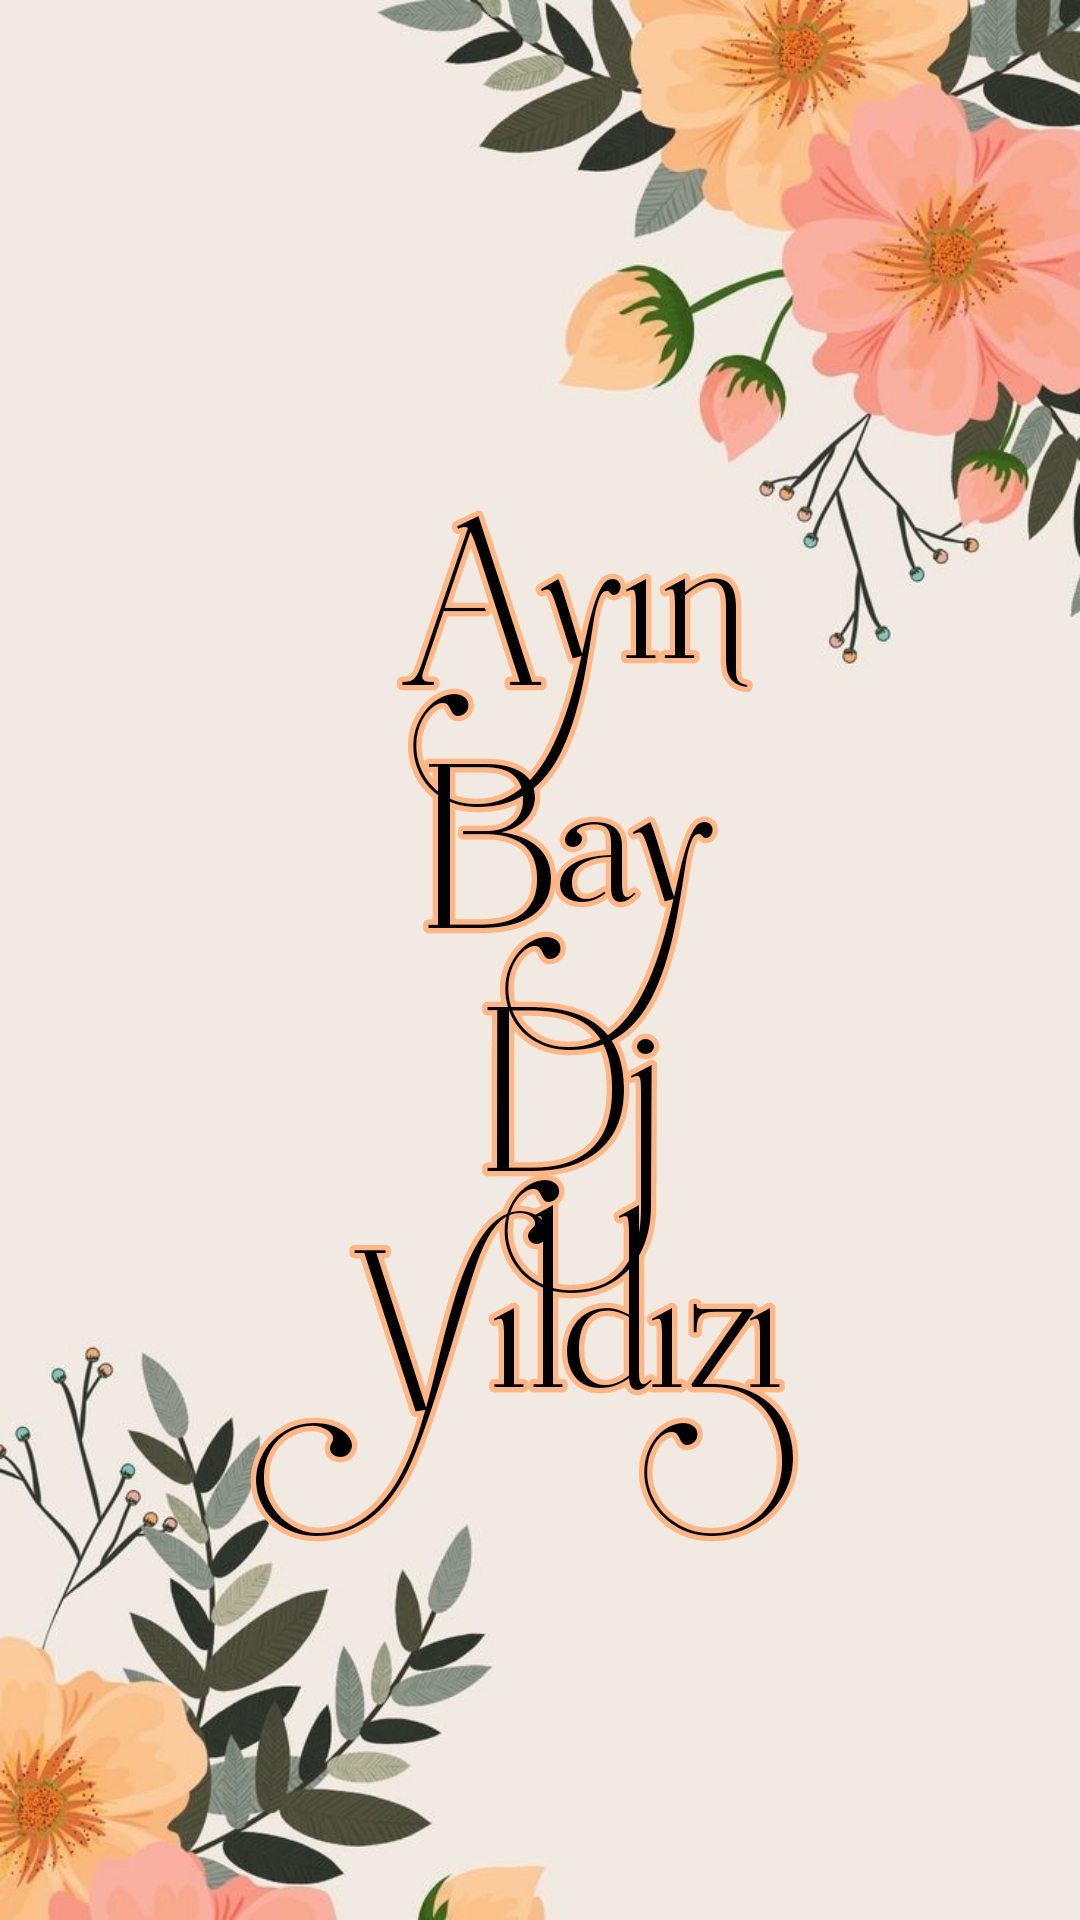 IR Ayn Bay Dj Yldz -Aralk-2021